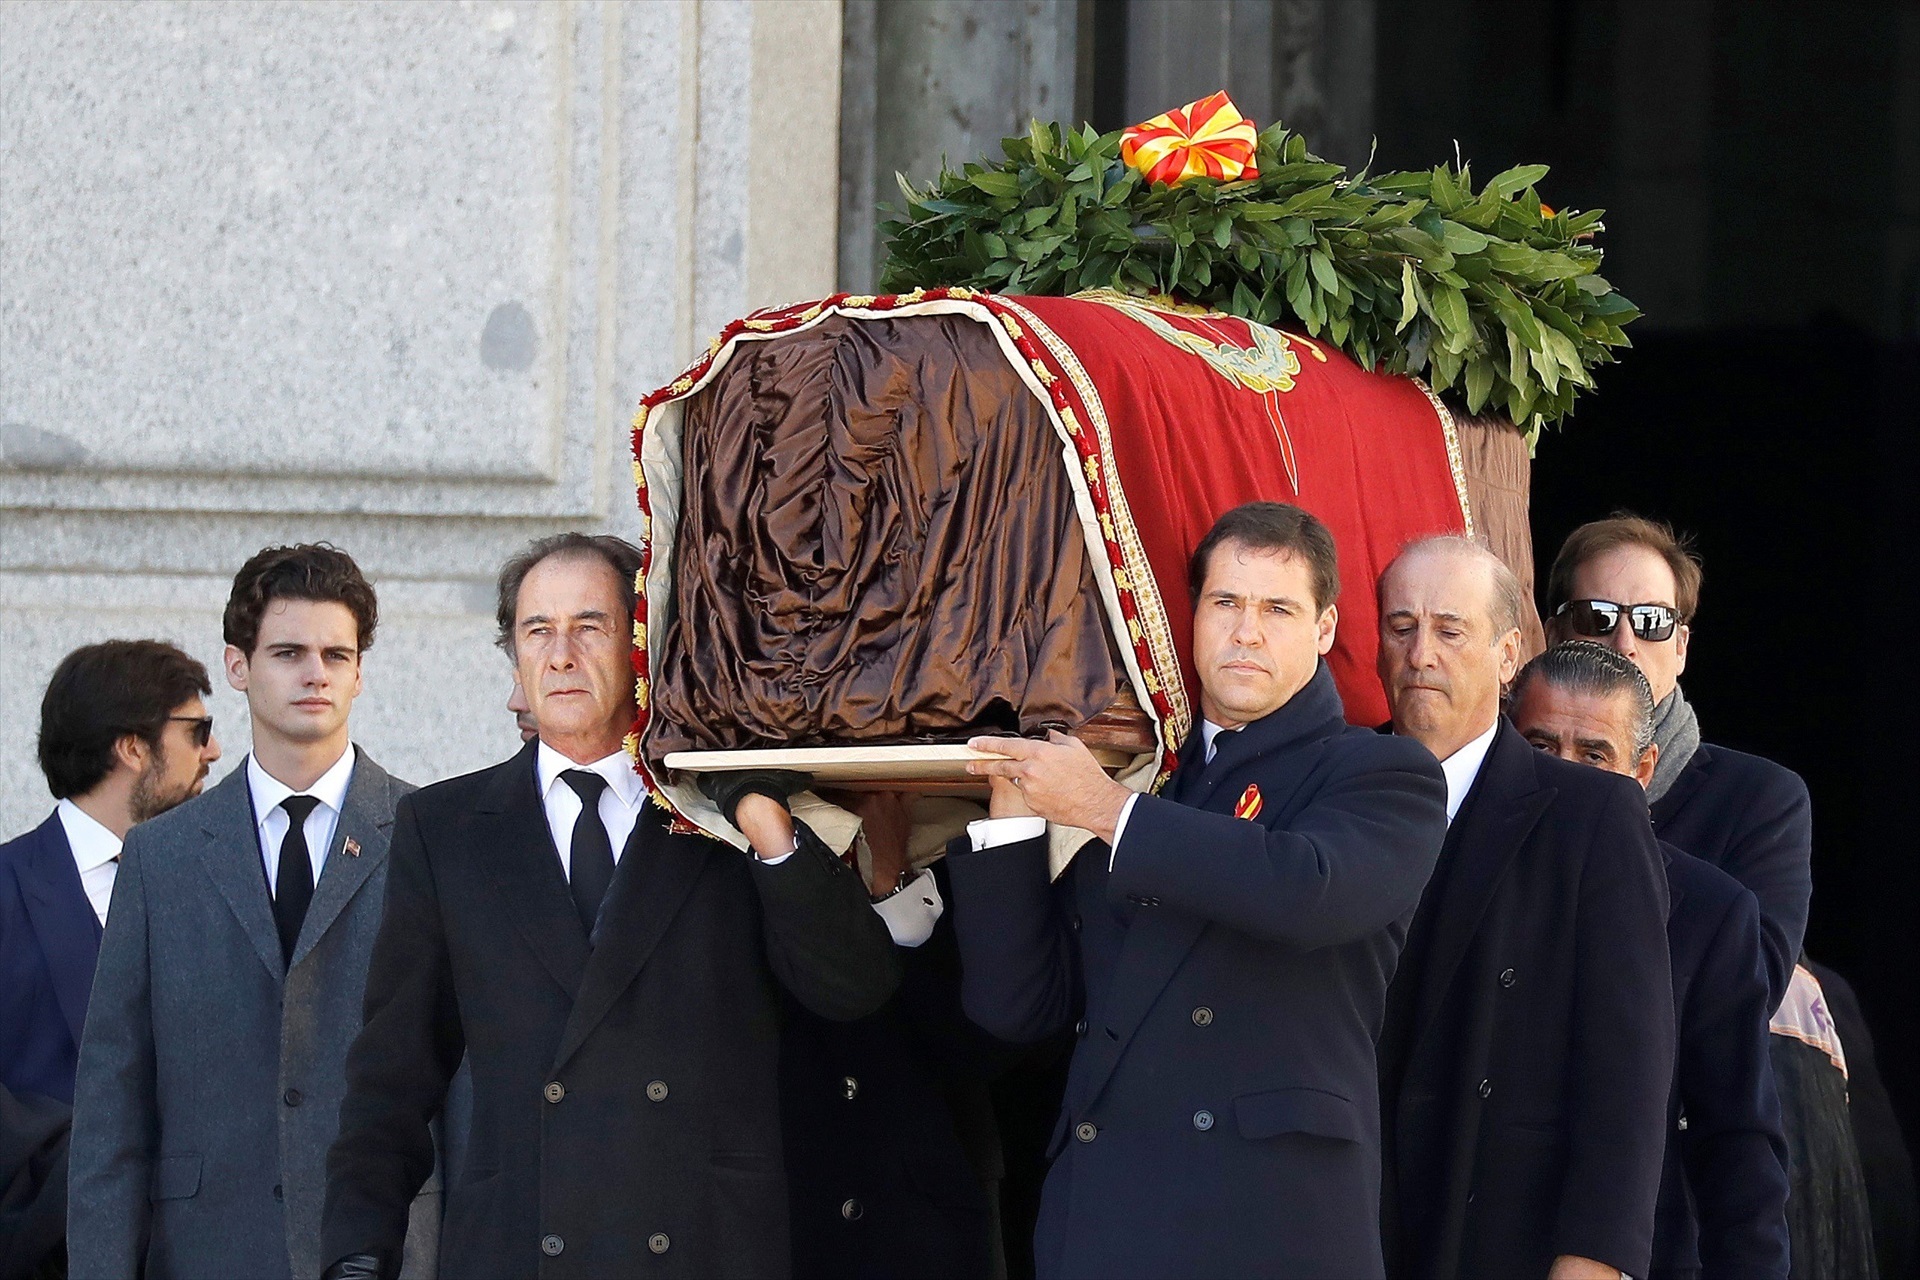 Los familiares de Franco, José Cristobal, Luis Alfonso de Borbón Martínez-Bordiú y Francis Franco portan el féretro con los restos mortales del dictador Francisco Franco tras su exhumación